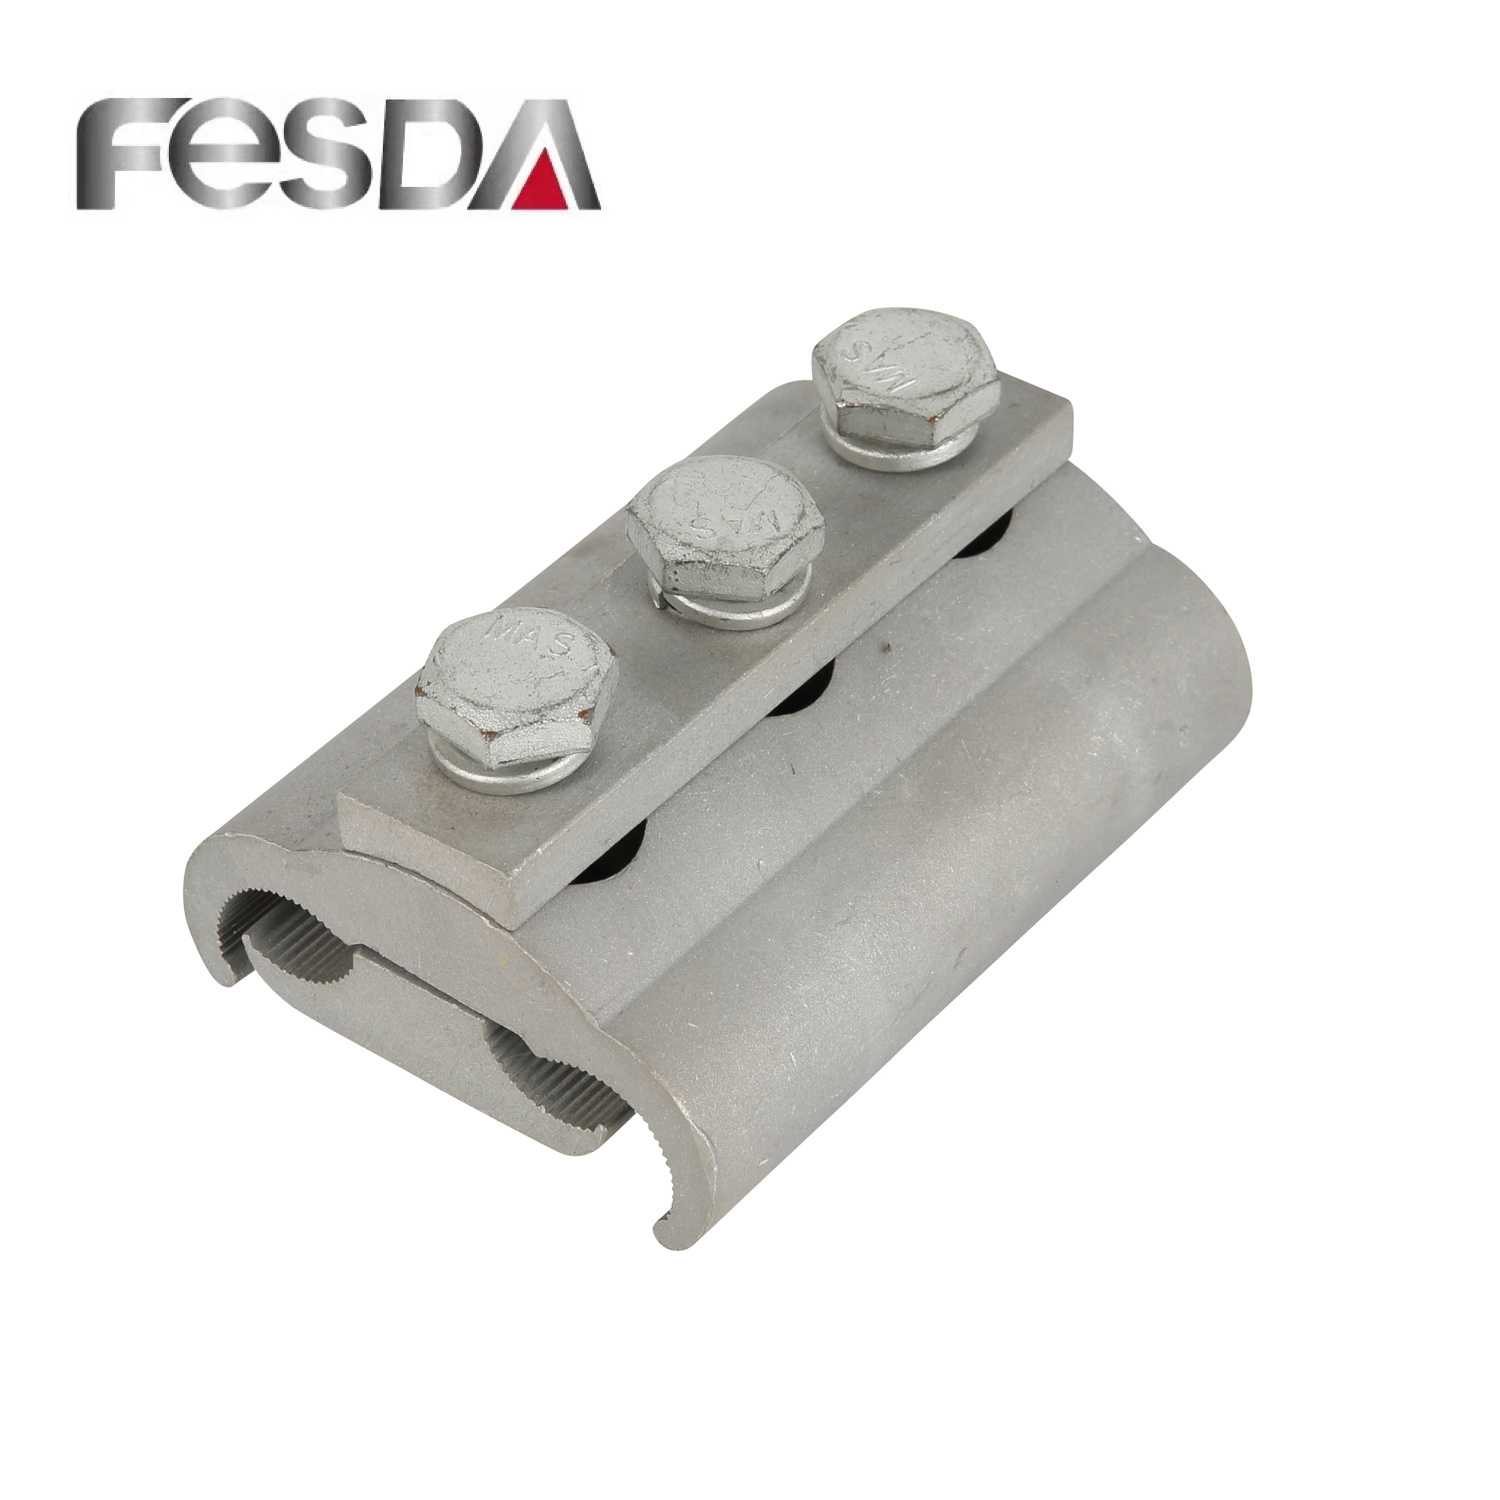 
                        Hot Sale Fesda Aluminium Pg Clamp Connector
                    